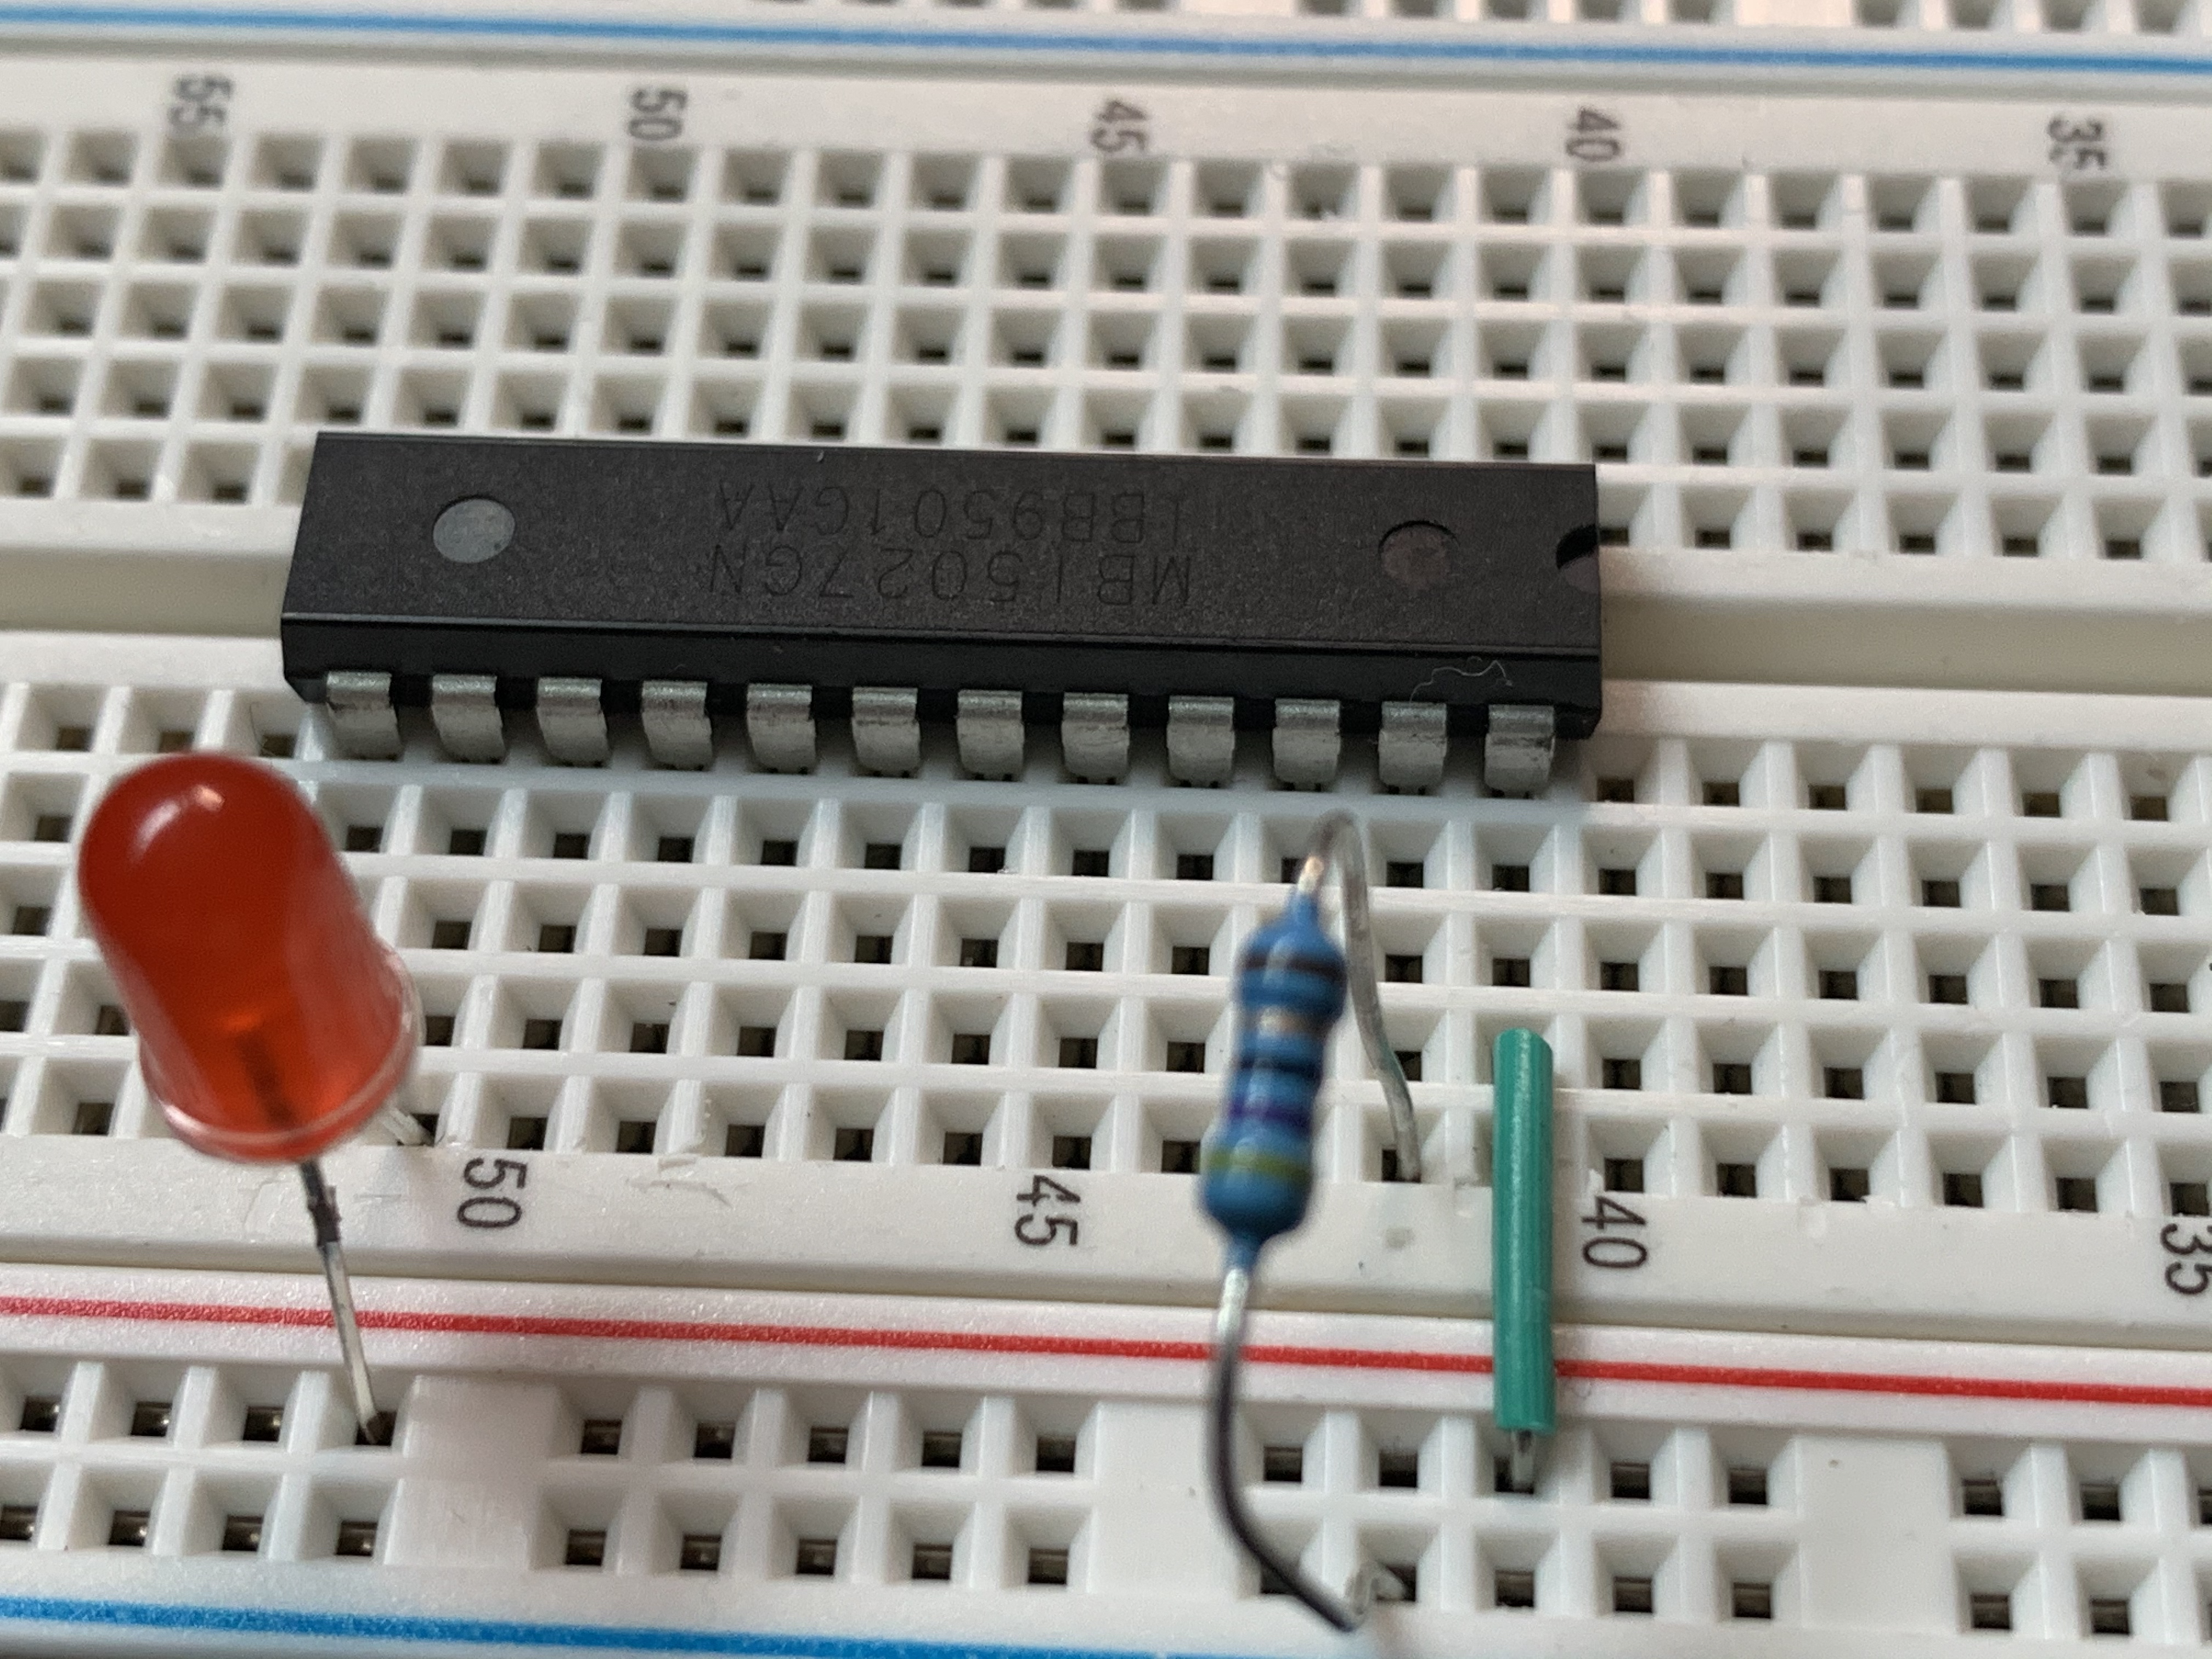 MBI5027 basic wiring